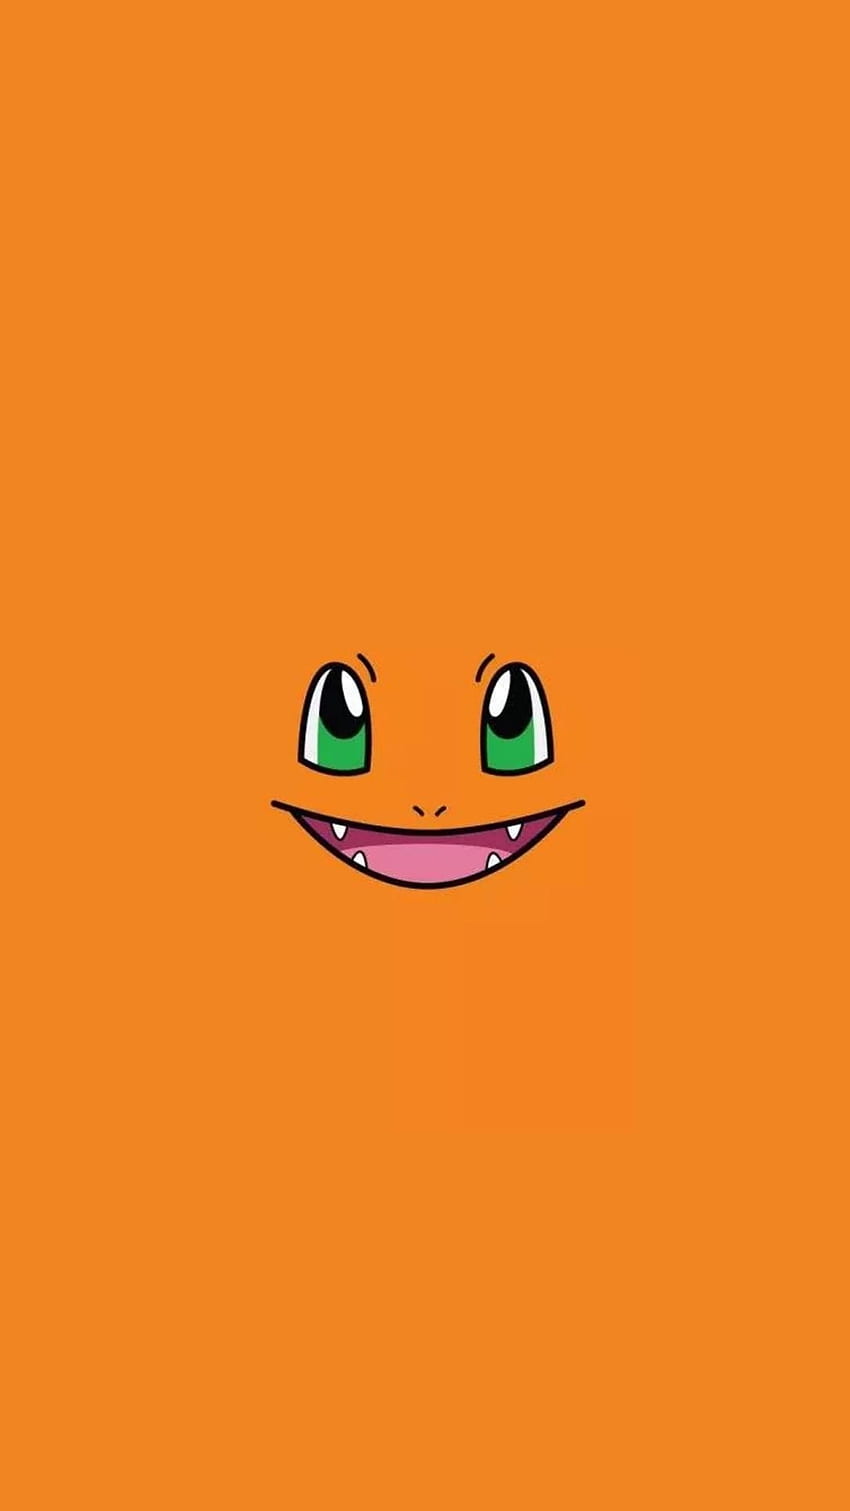 Charmander là một trong những loài Pokémon đáng yêu và nổi tiếng, với đuôi lửa rực rỡ và sức mạnh kháng lửa. Hãy xem bức hình này về Charmander đang cười toe toét, bạn sẽ muốn tìm hiểu thêm về vũ trụ Pokémon và sự kì diệu của chúng.